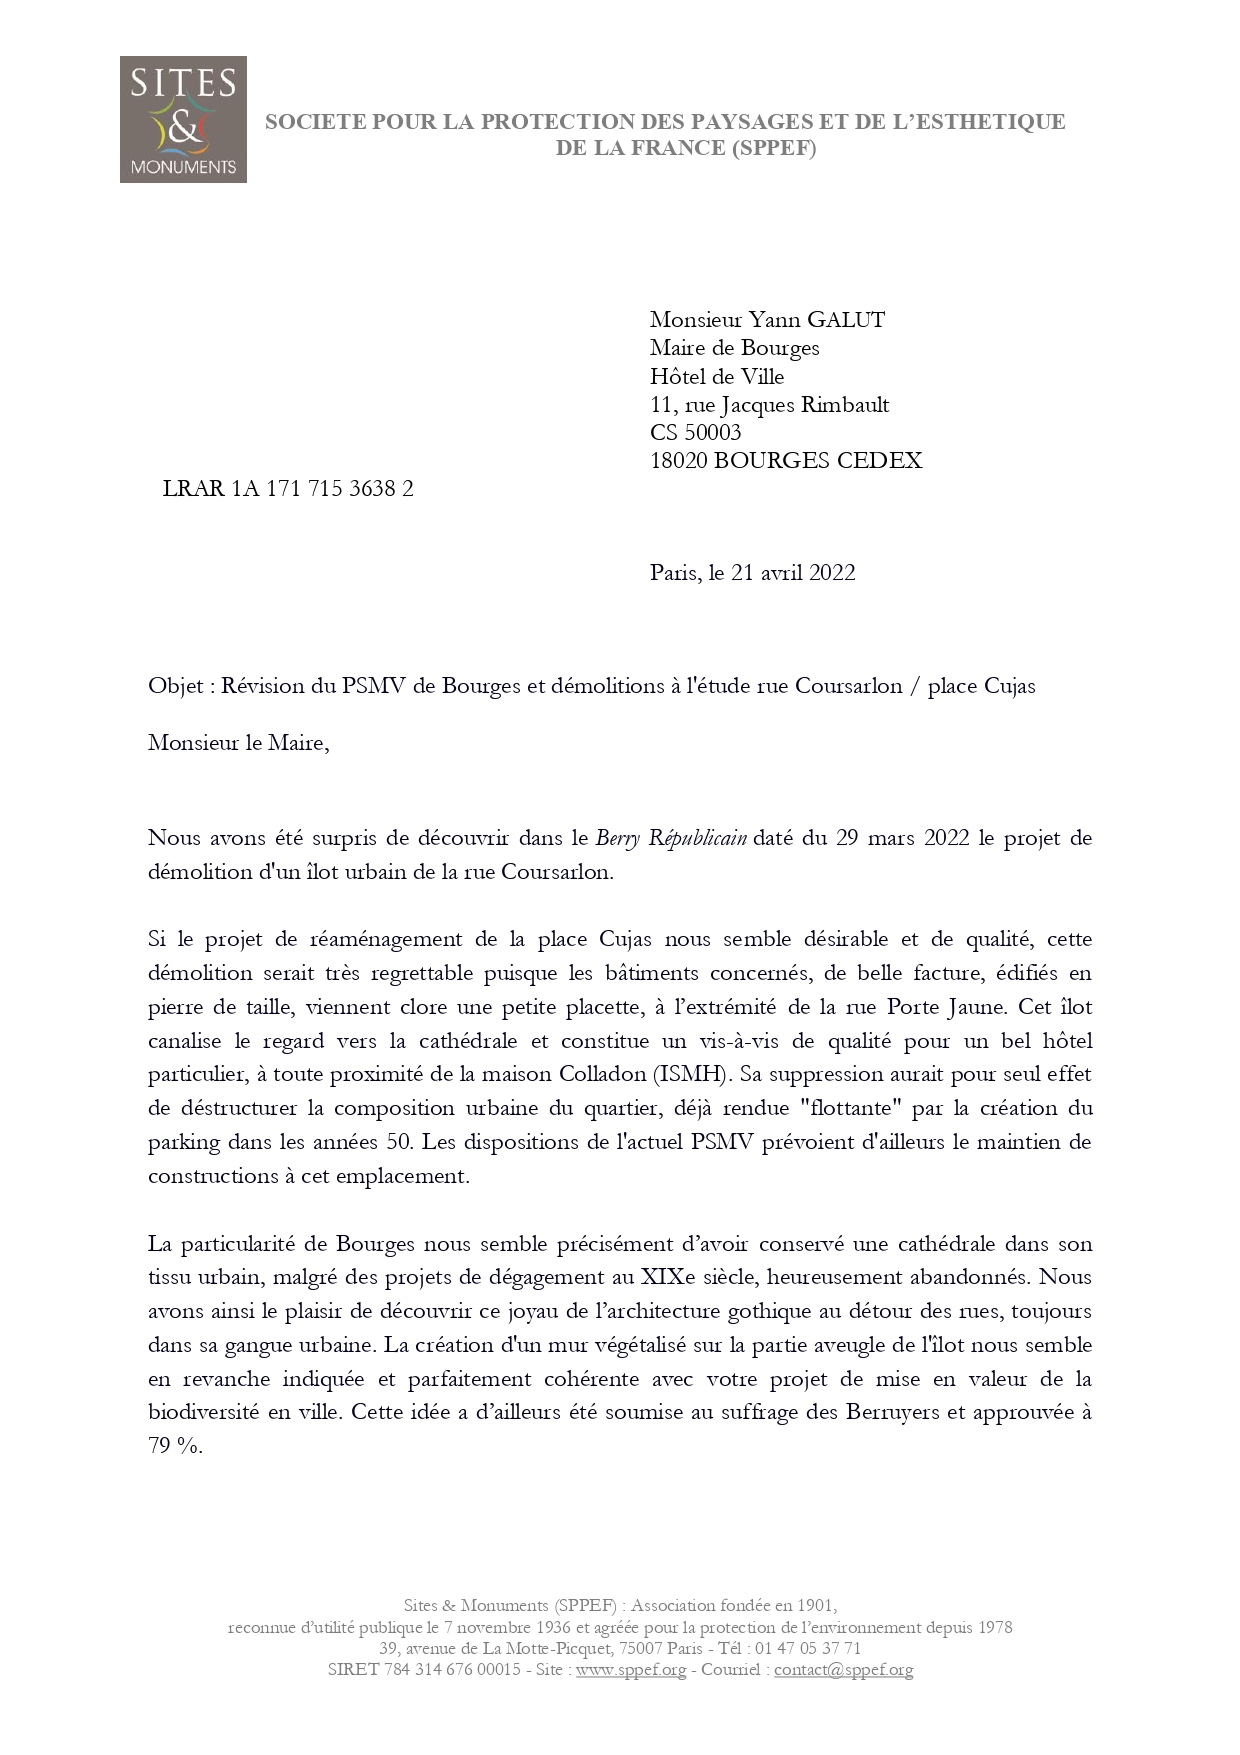 Courrier de Sites & Monuments au maire de Bourges du 21 avril 2022